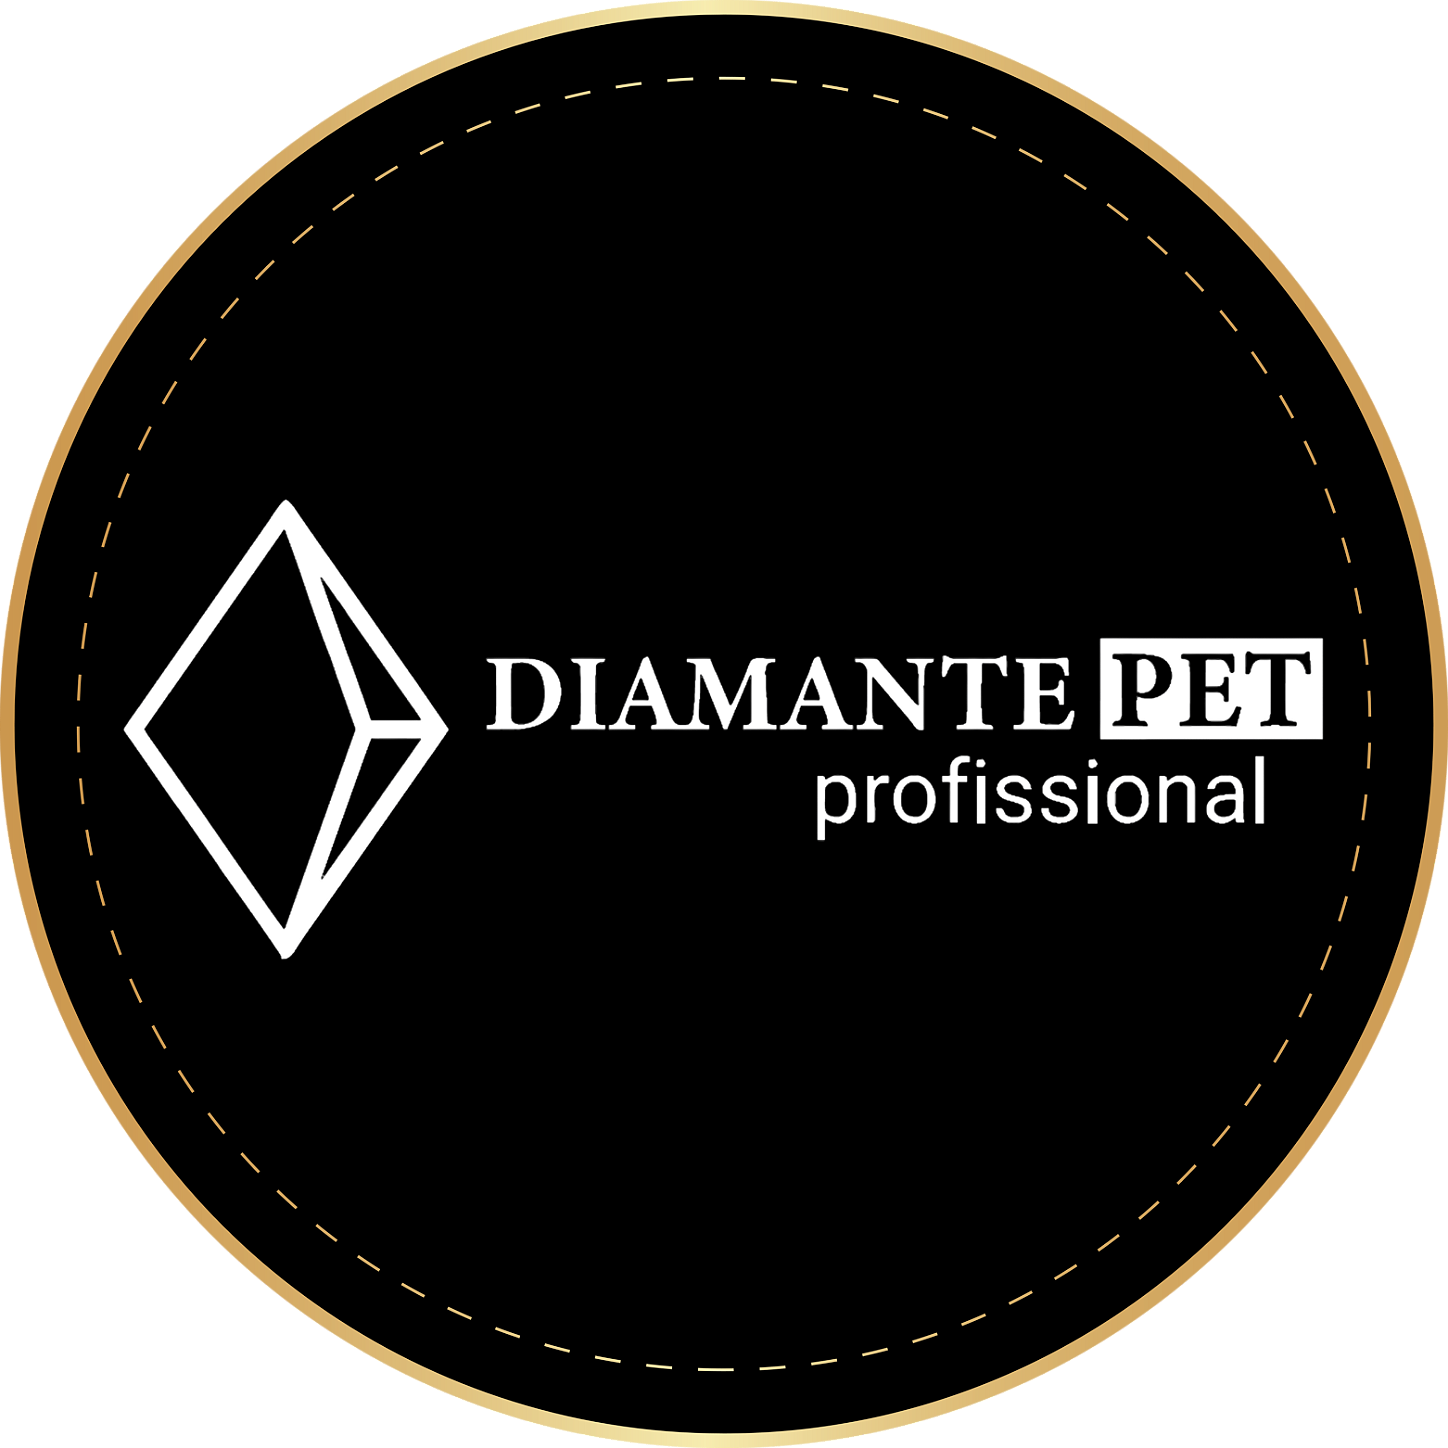 Diamante Pet Profissional